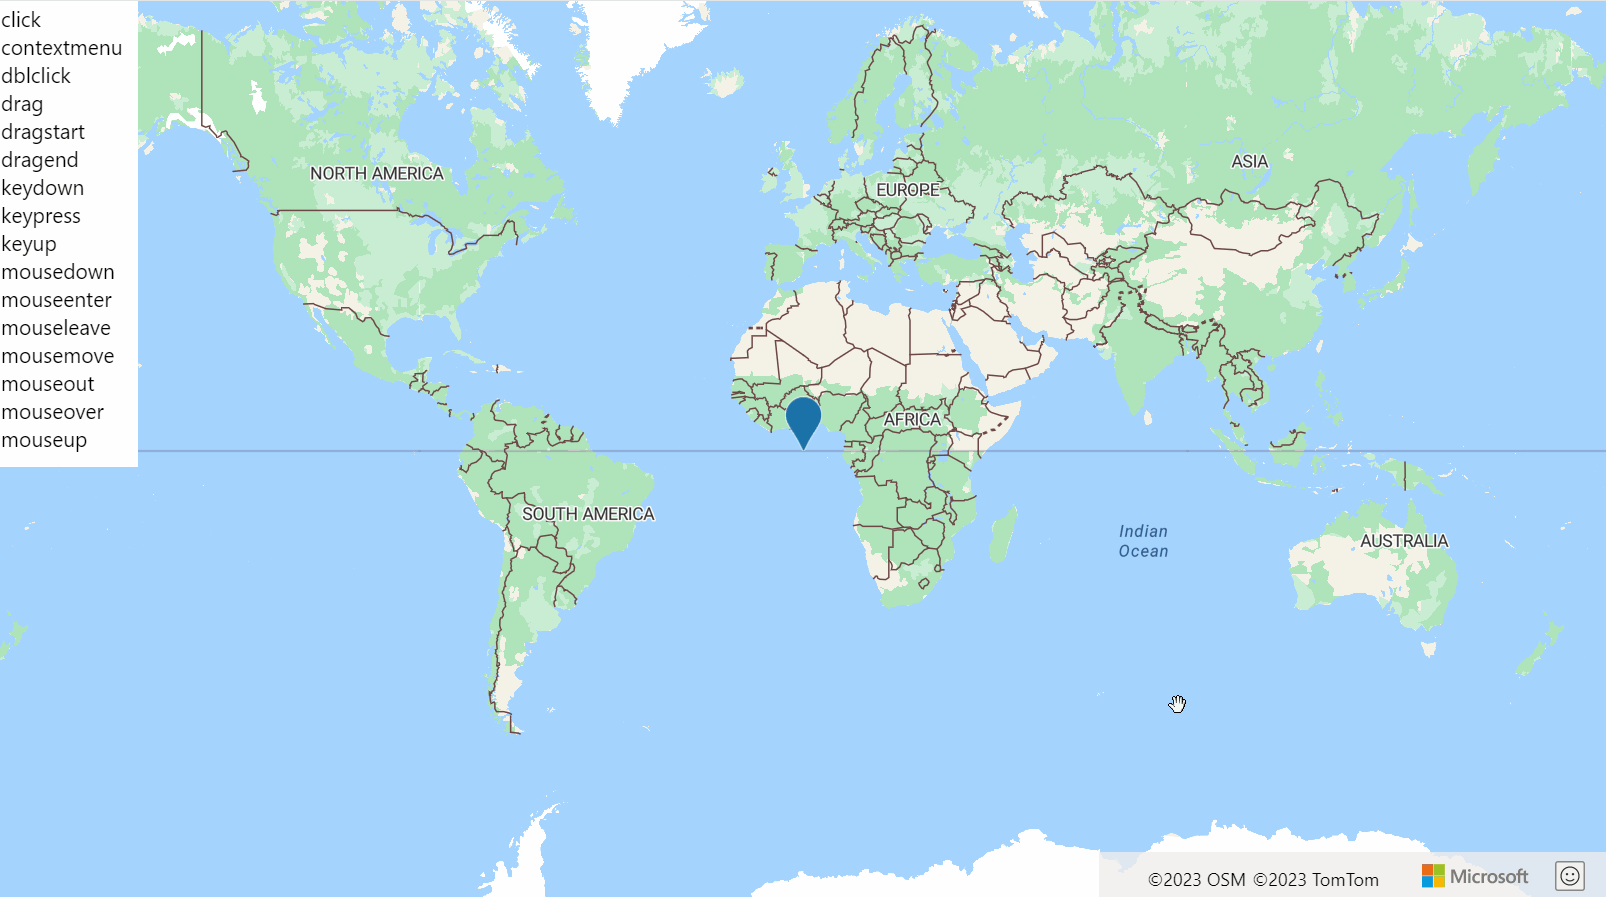 Снимок экрана: карта мира с HtmlMarker и списком событий HtmlMarker, которые выделяются зеленым цветом при возникновении этого события.